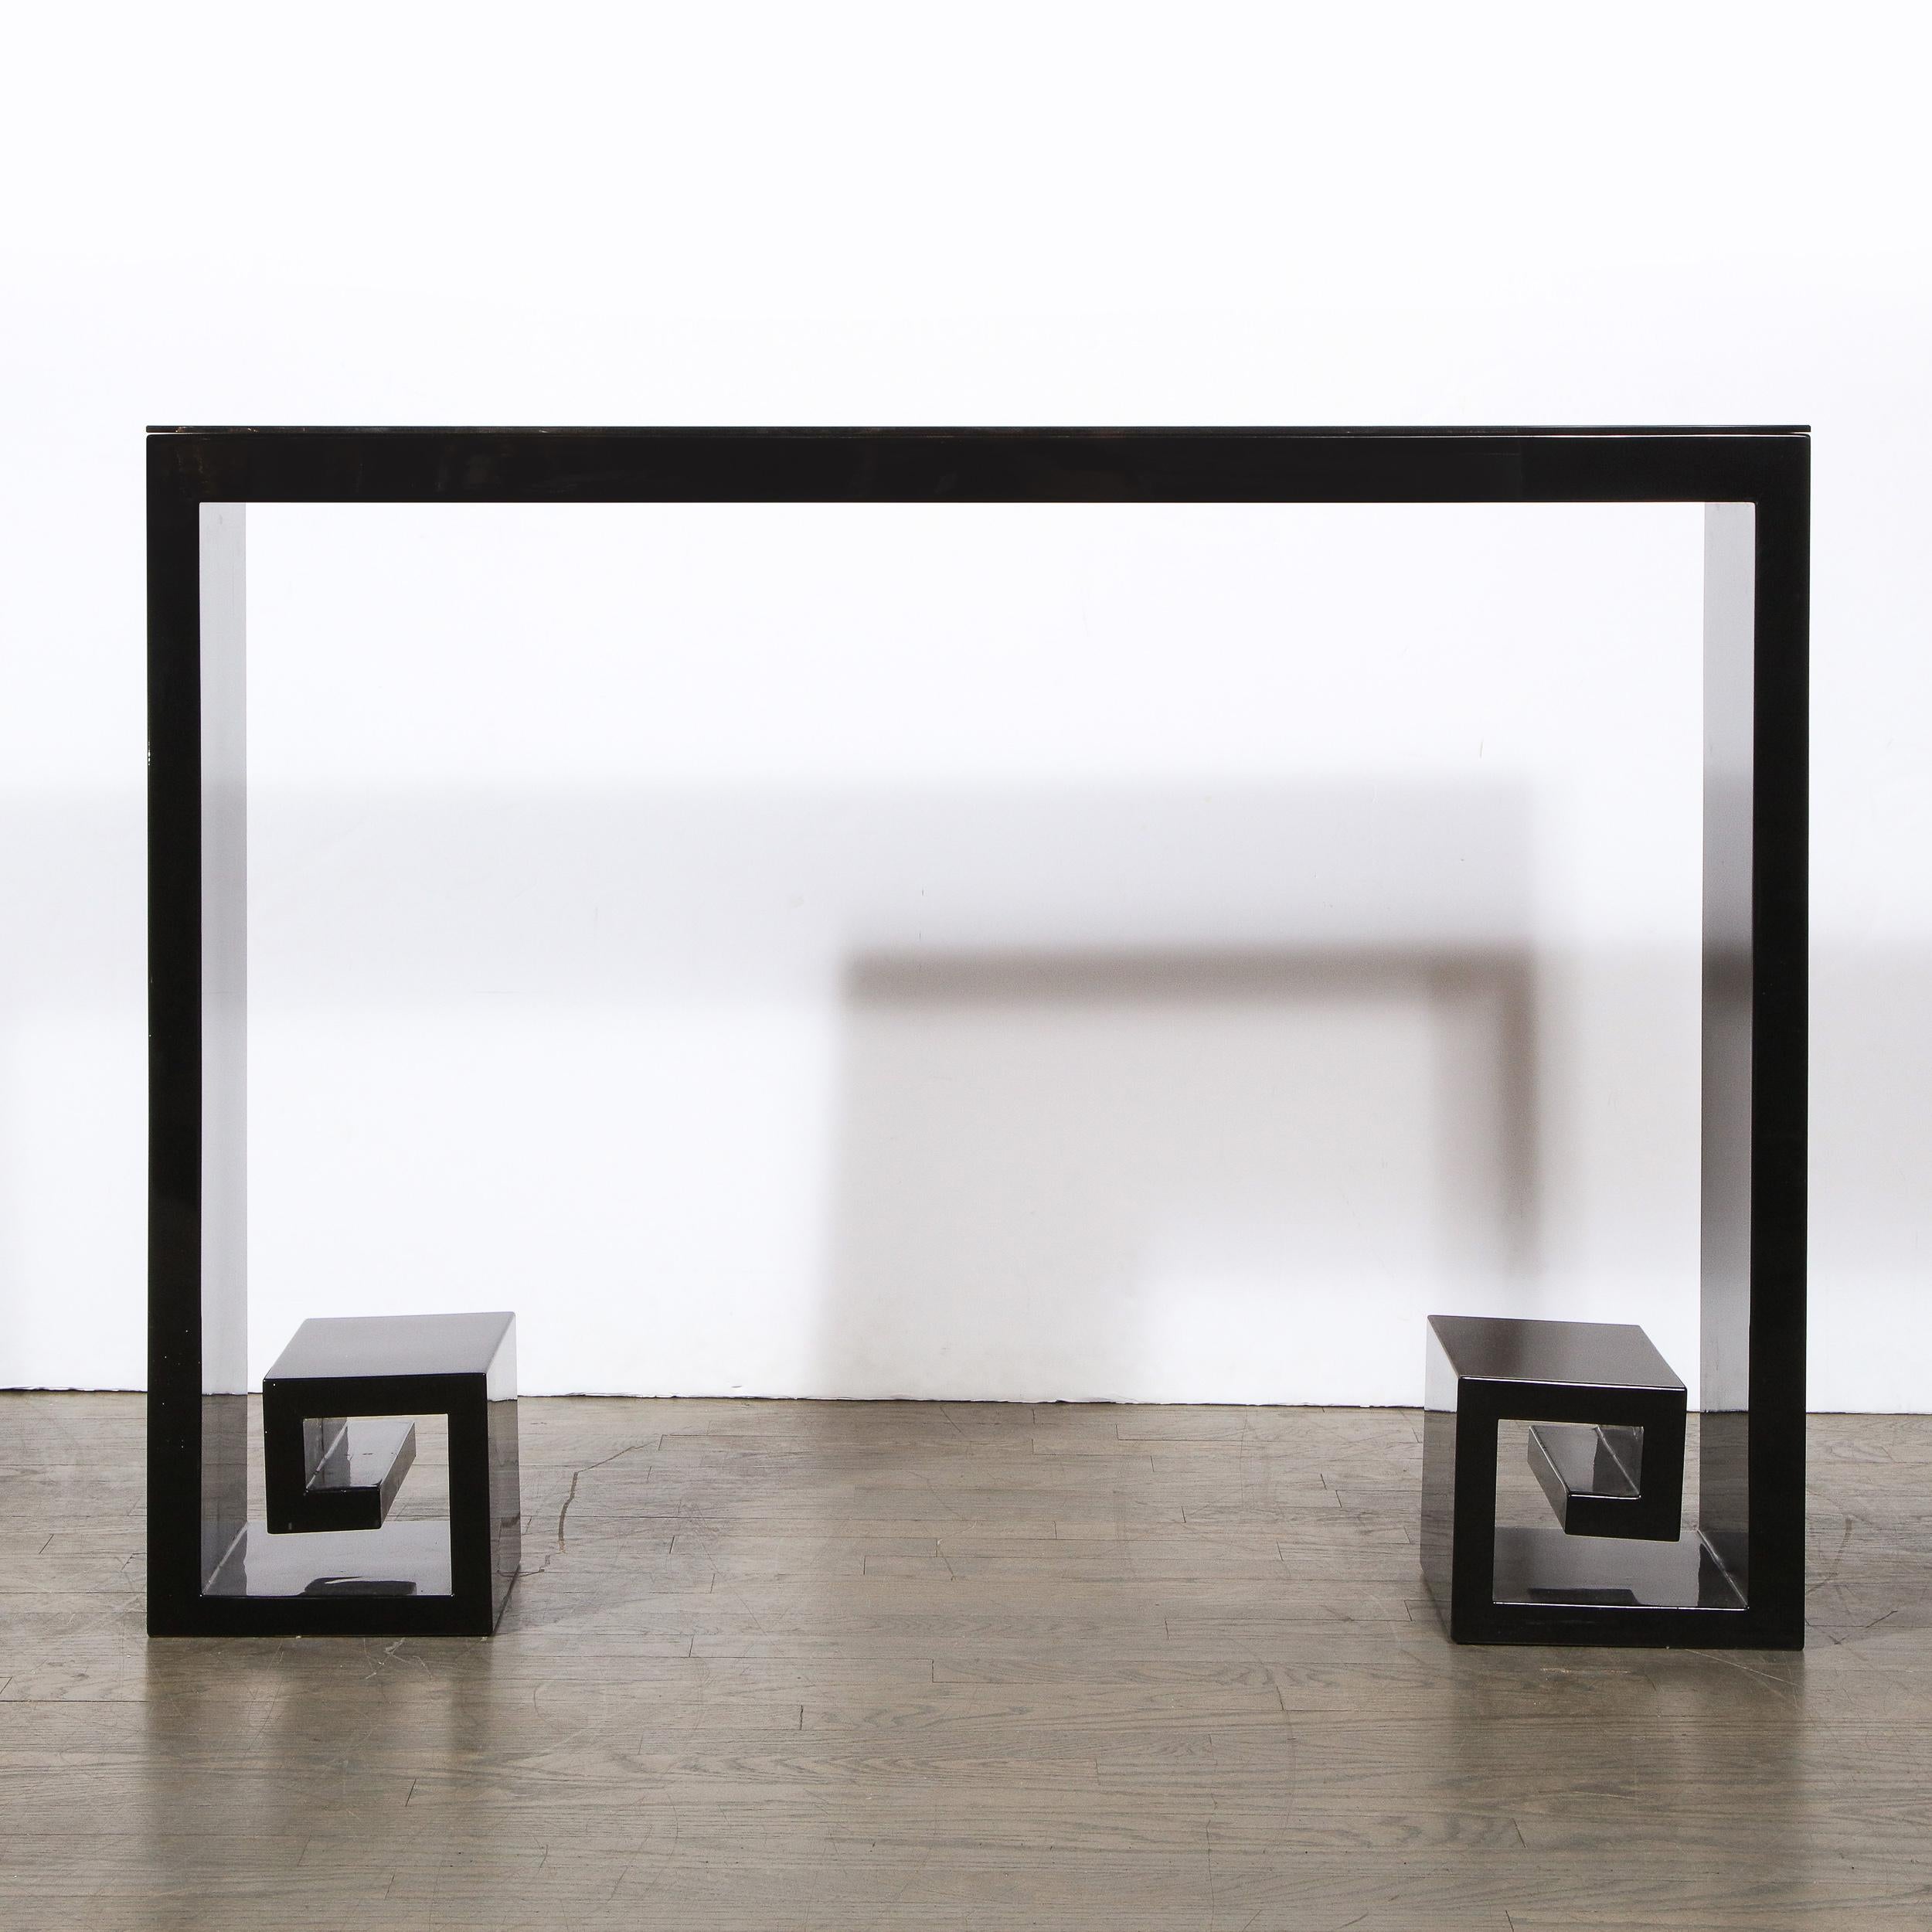 Cette étonnante console moderniste en laque noire a été réalisée par des artisans de l'État de New York. Il offre une forme carrée ouverte avec des détails de clé grecque stylisée à sa base et un tiroir rectangulaire en son centre. Avec sa forme